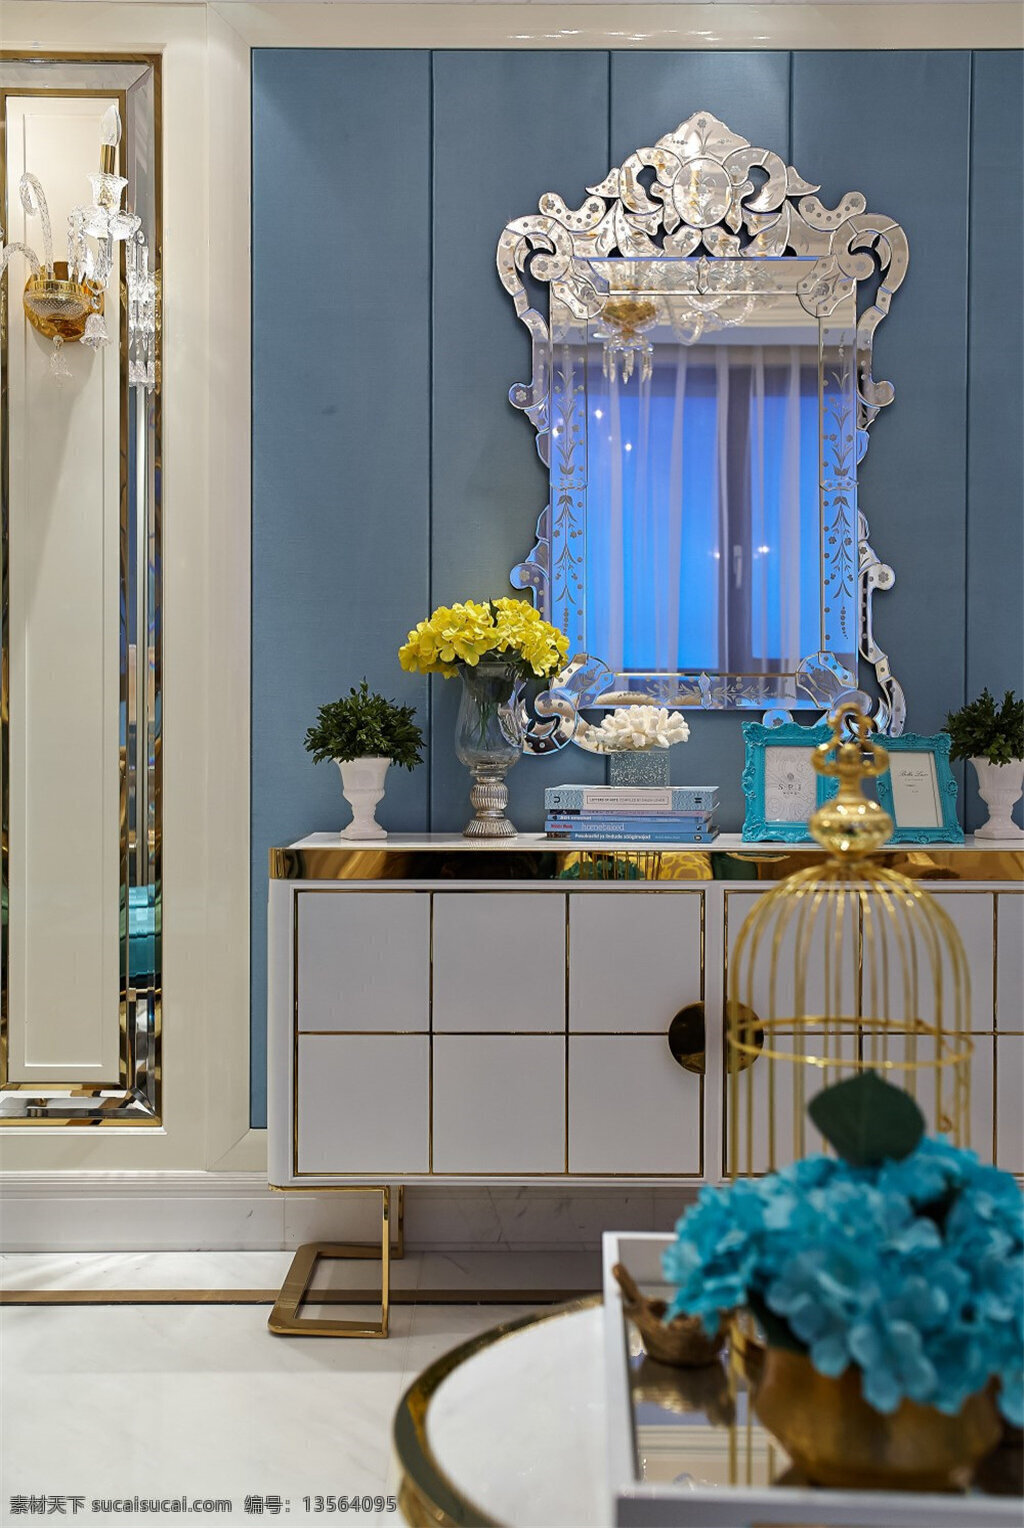 欧式 卧室 梳妆台 装修 效果图 圆形桌子 地板砖 古典欧式镜子 蓝色背景 射灯 白色灯光